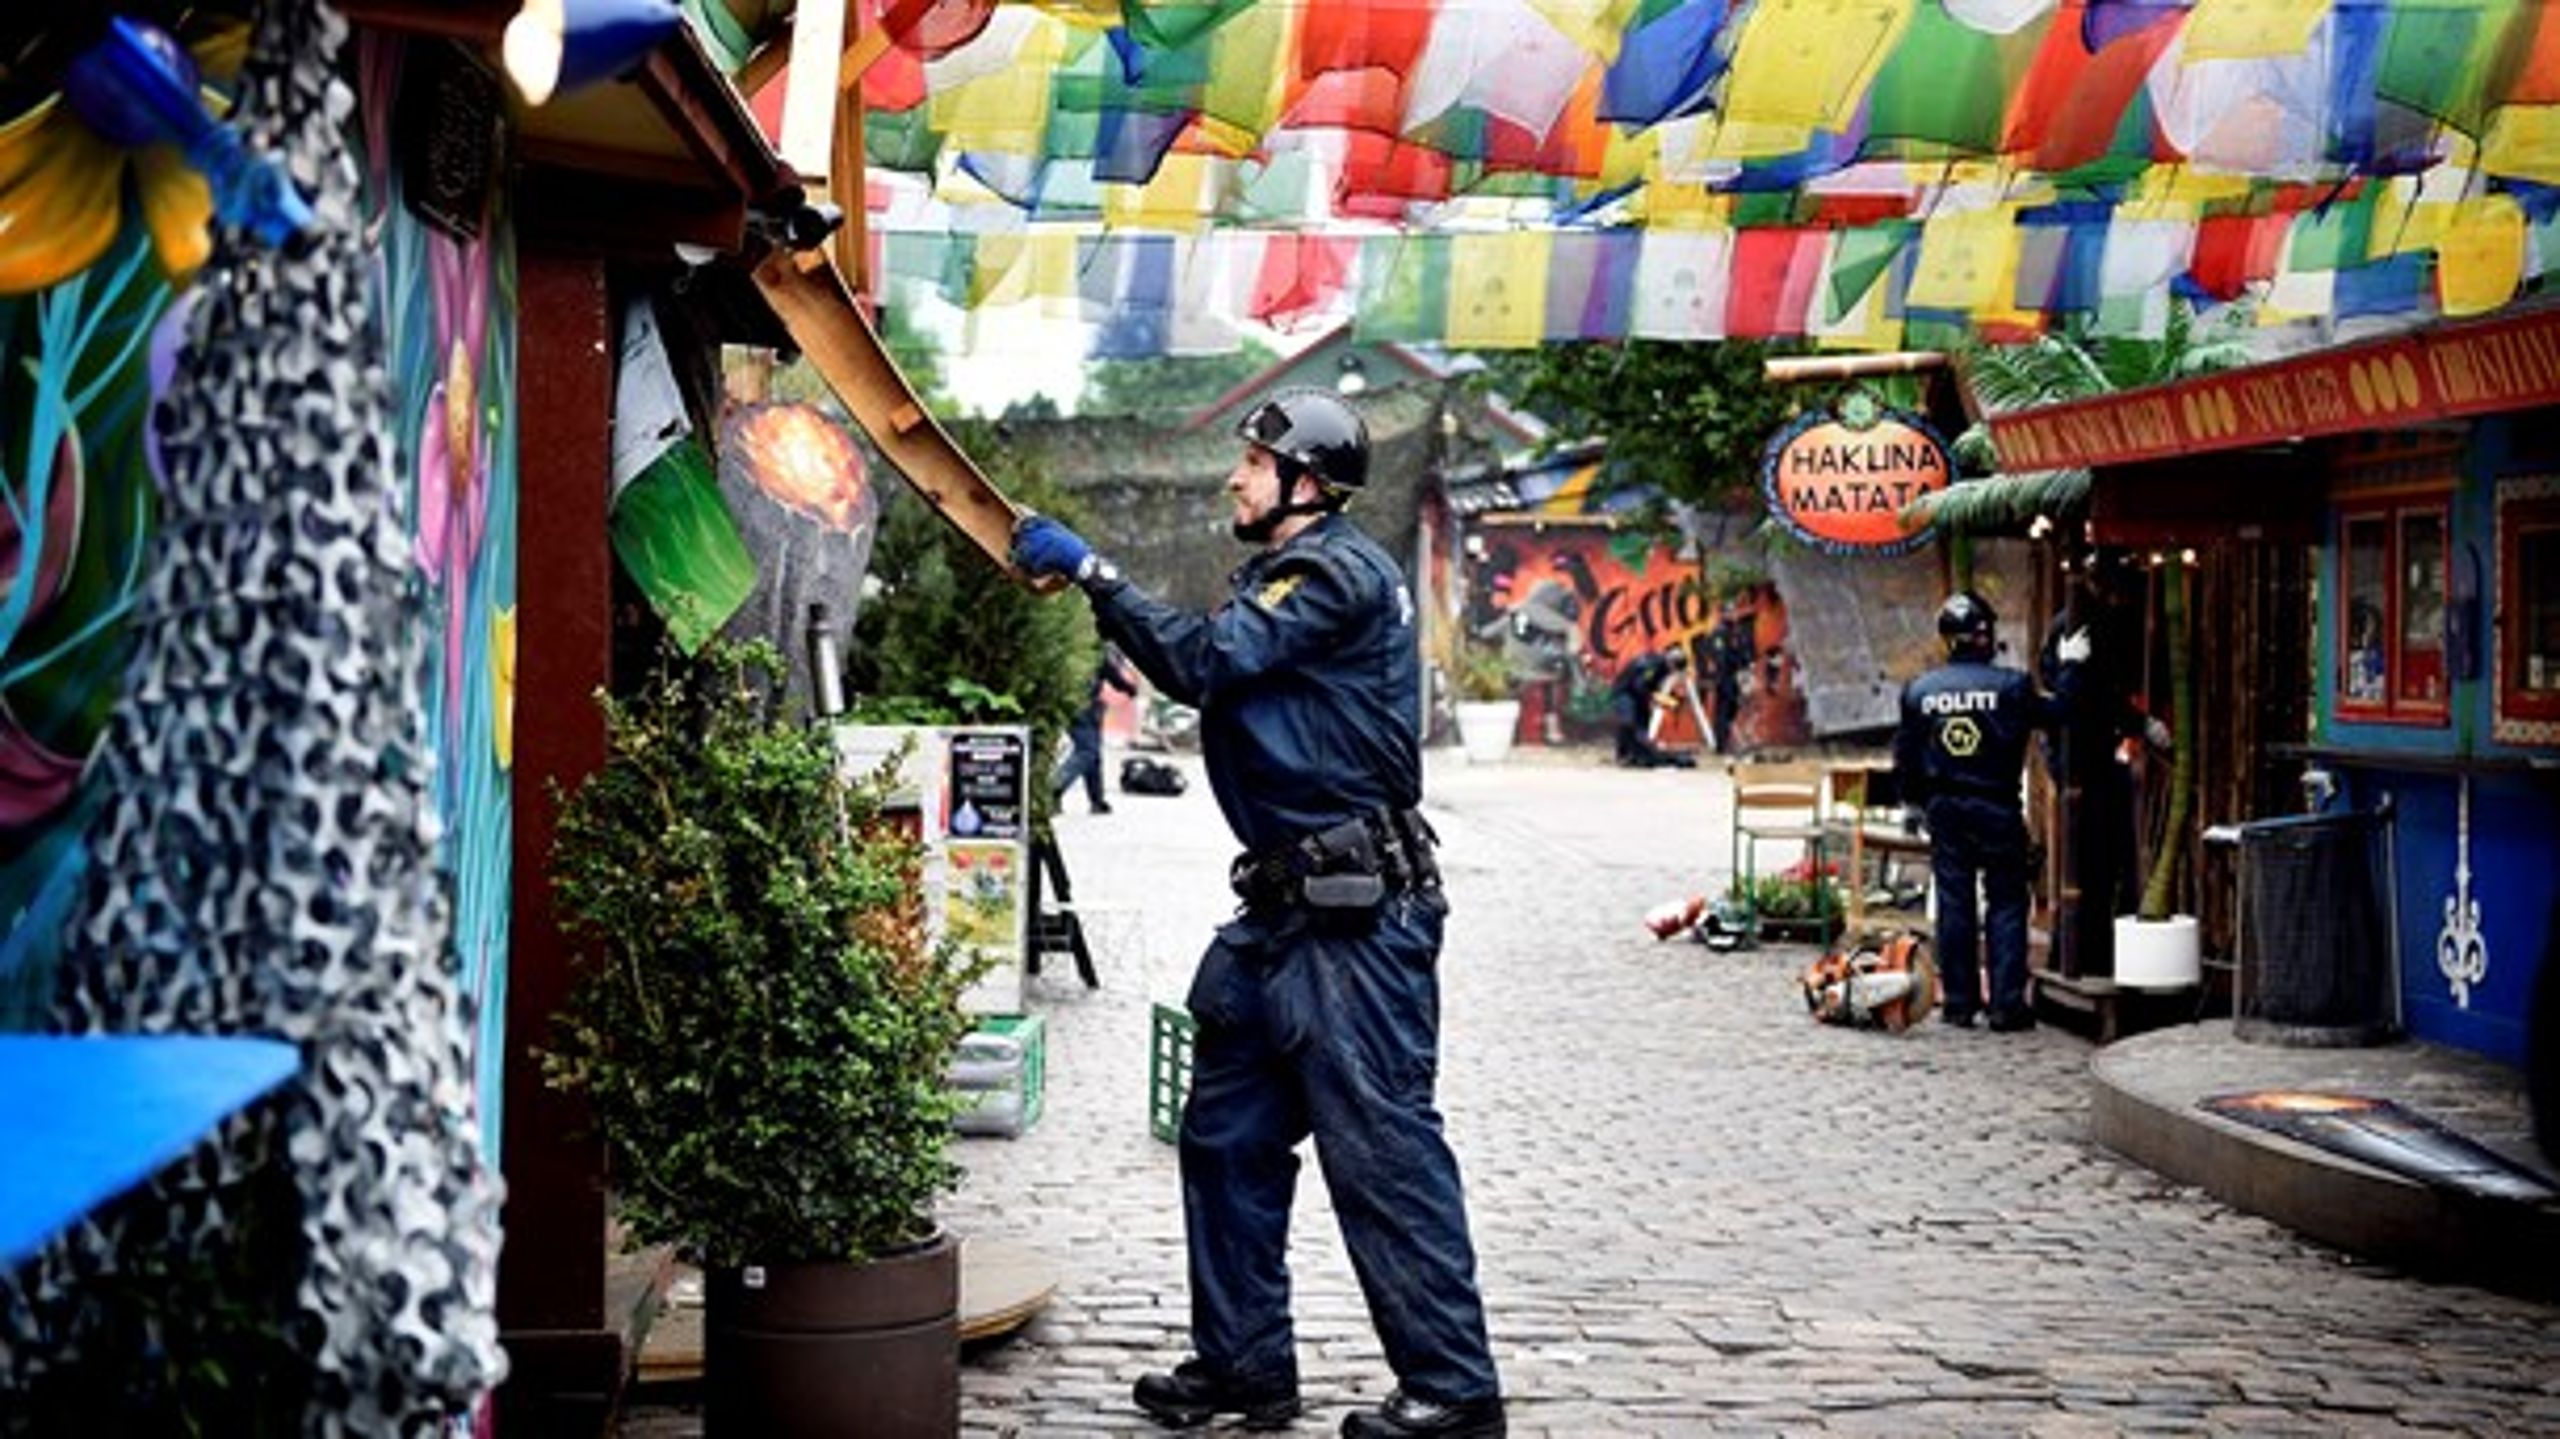 Et statsautoriseret salg af cannabis ville give politiet flere ressourcer og&nbsp;hjælpe Christiania til at komme af med kriminaliteten, skriver Carl Valentin.